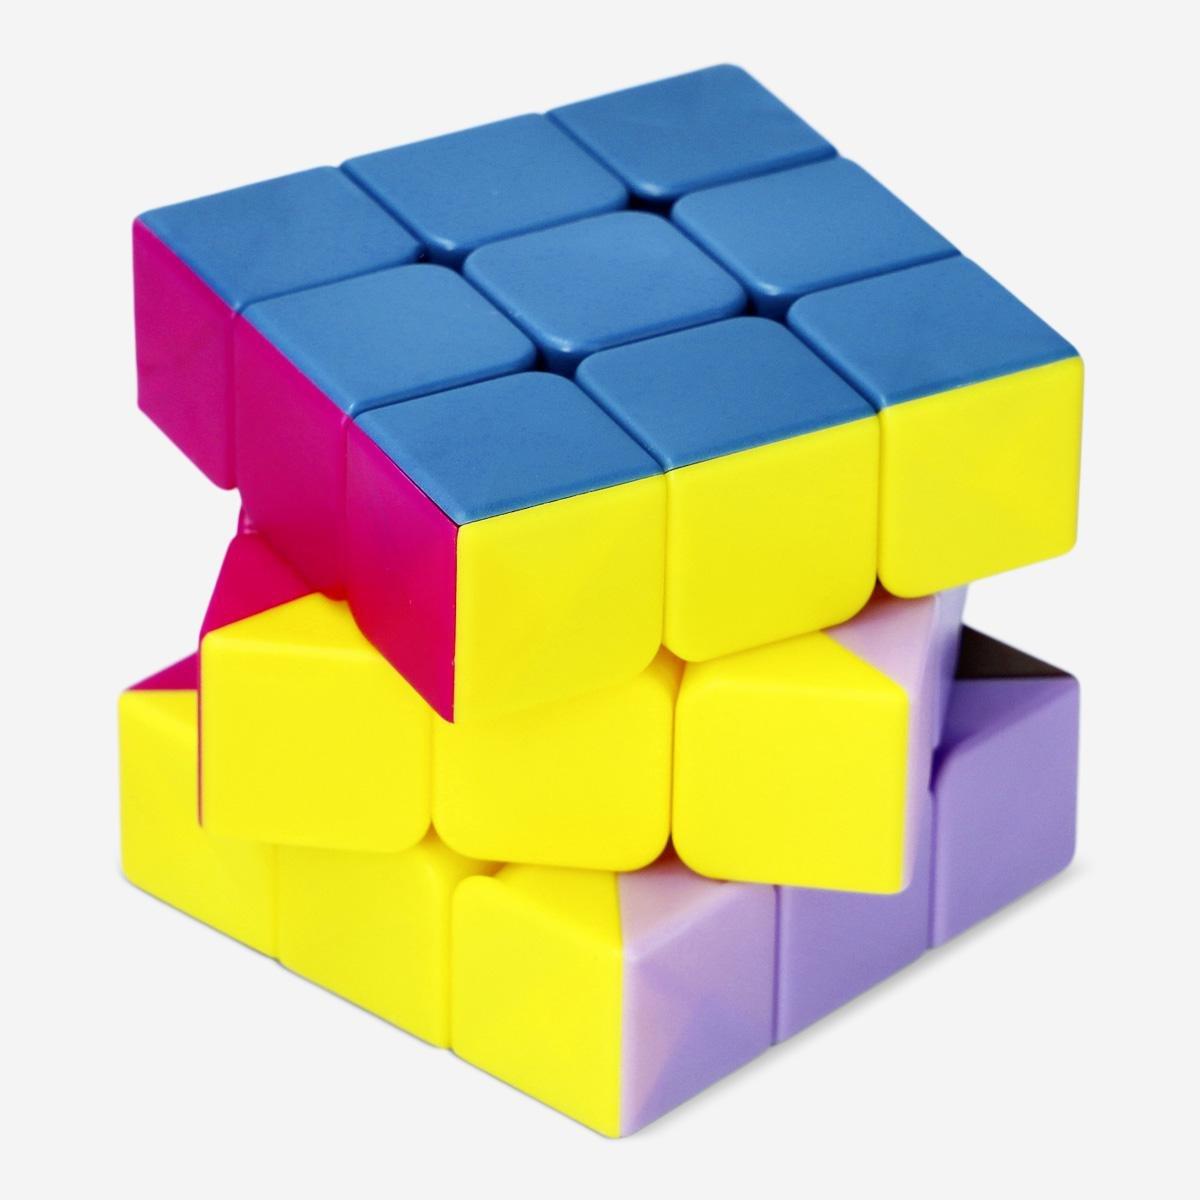 Multicolour IQ cube